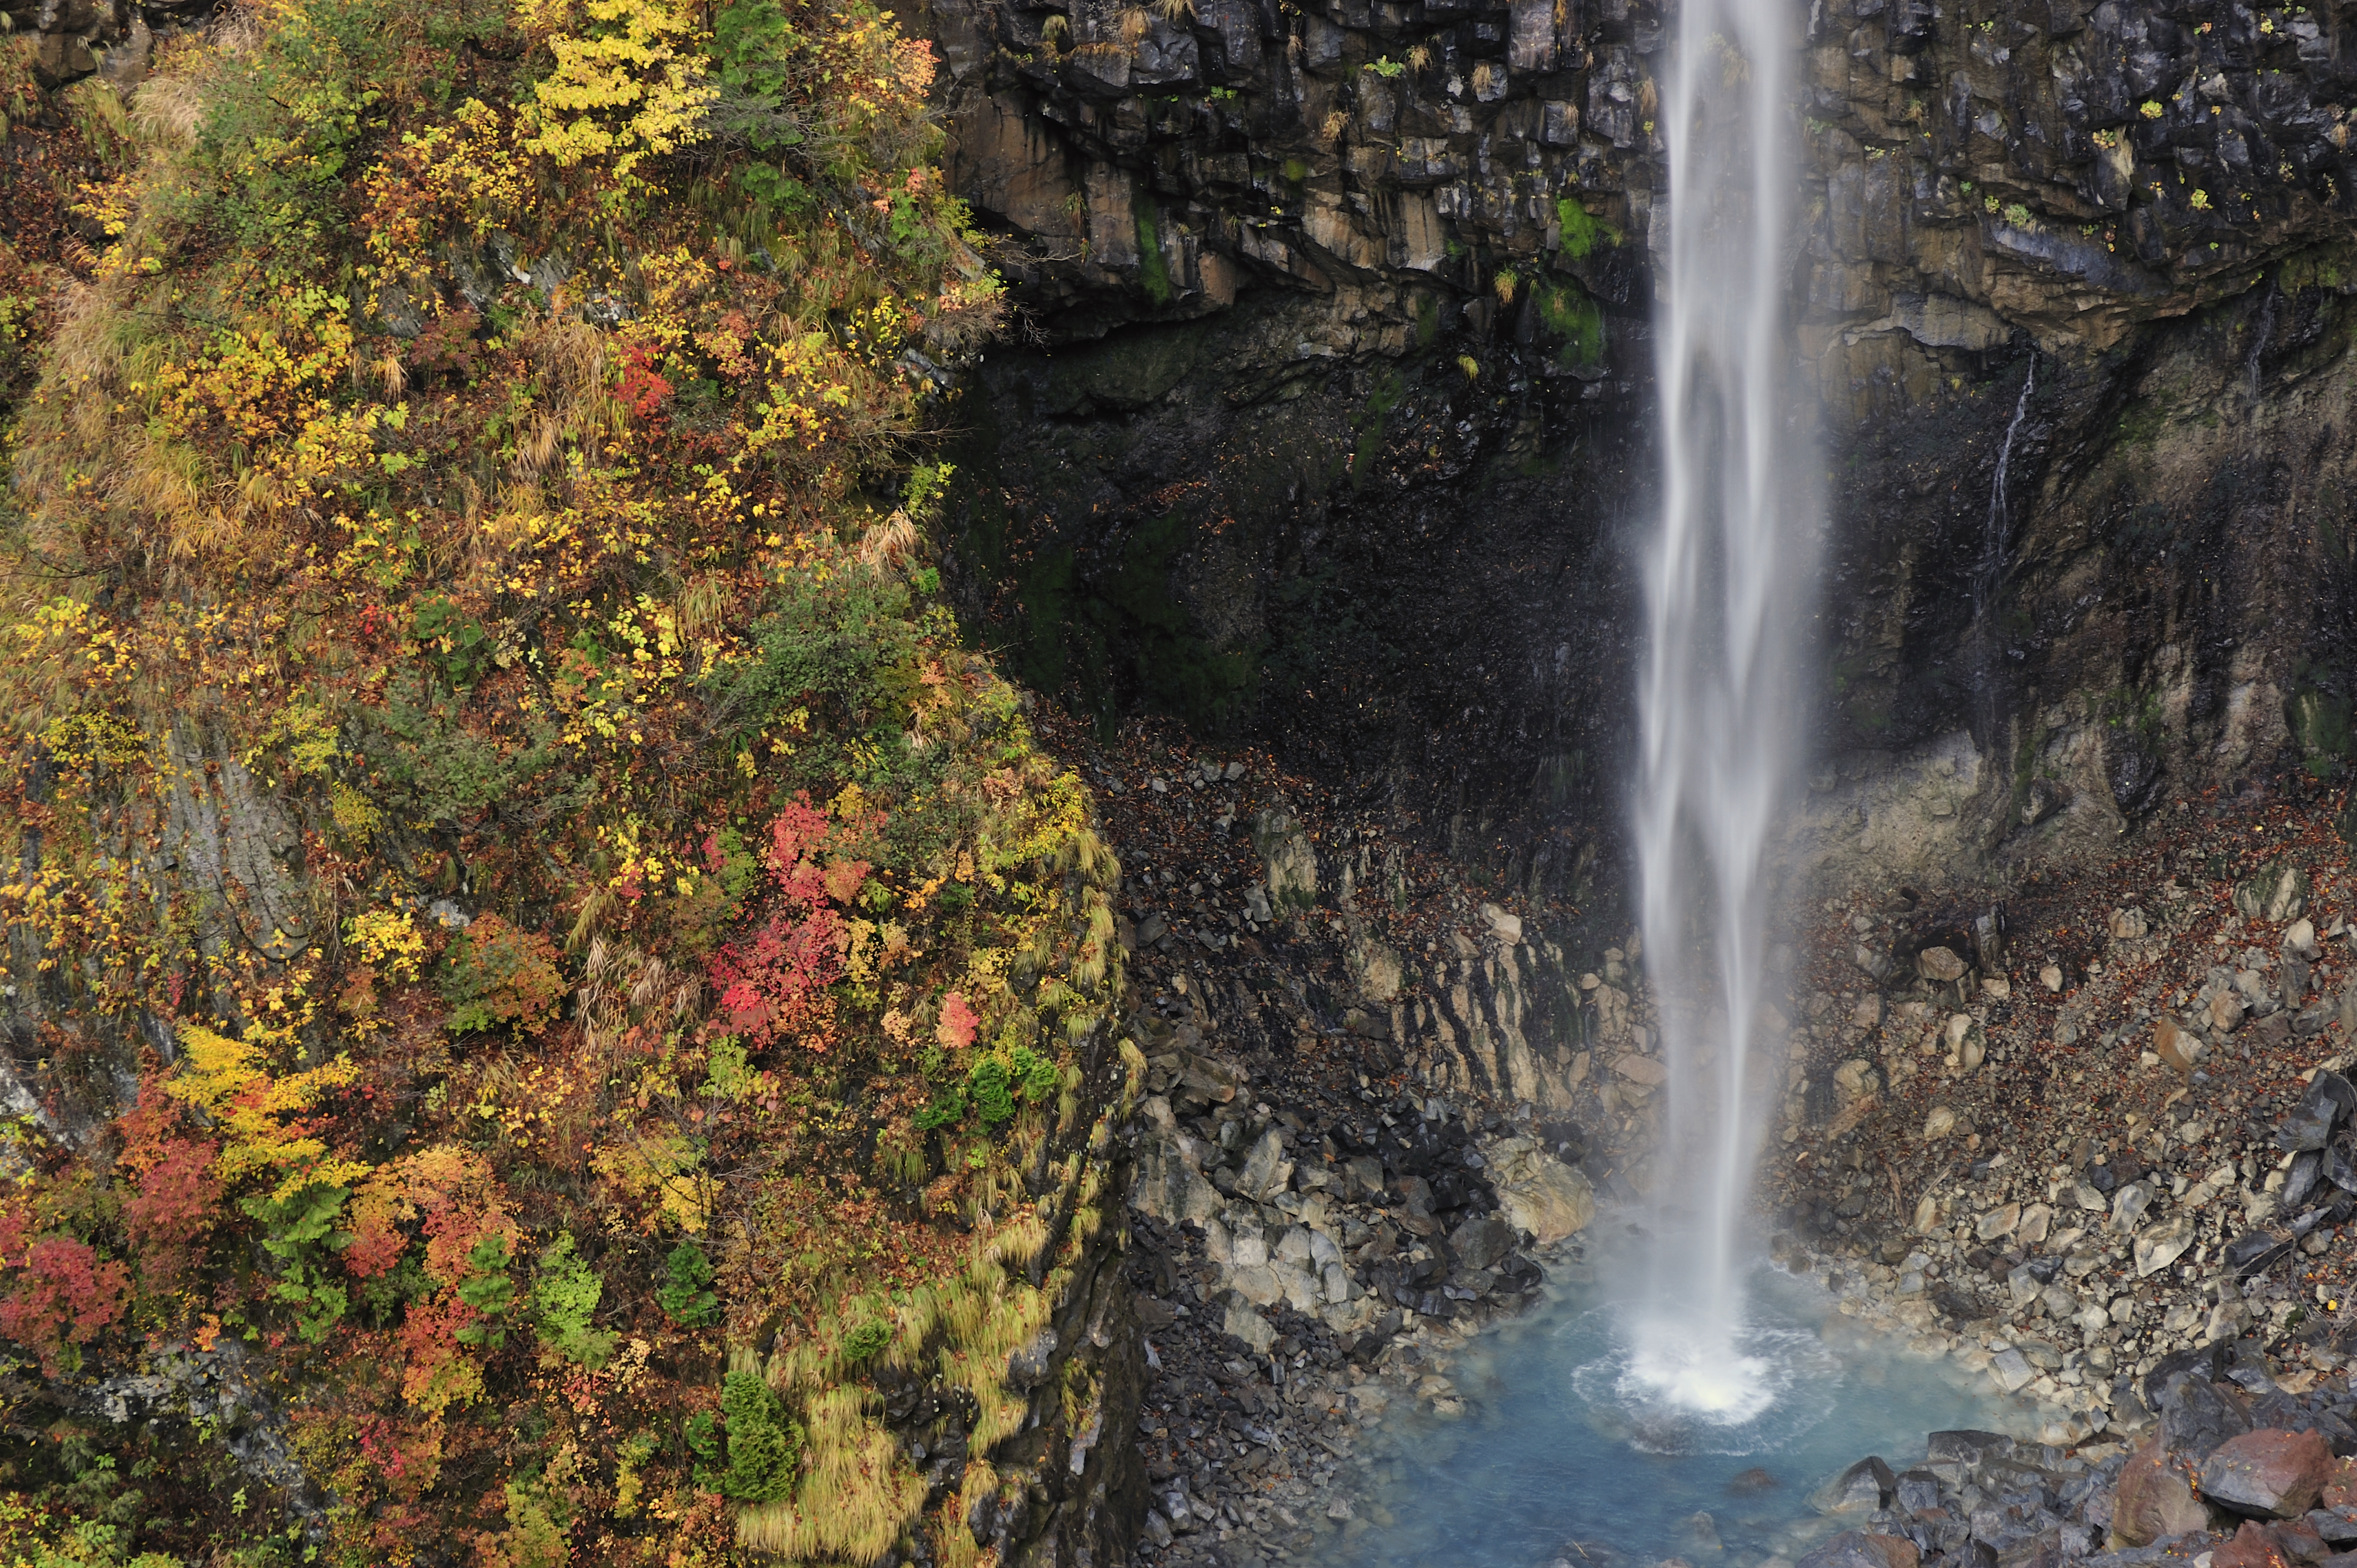 Shiramizu Waterfall